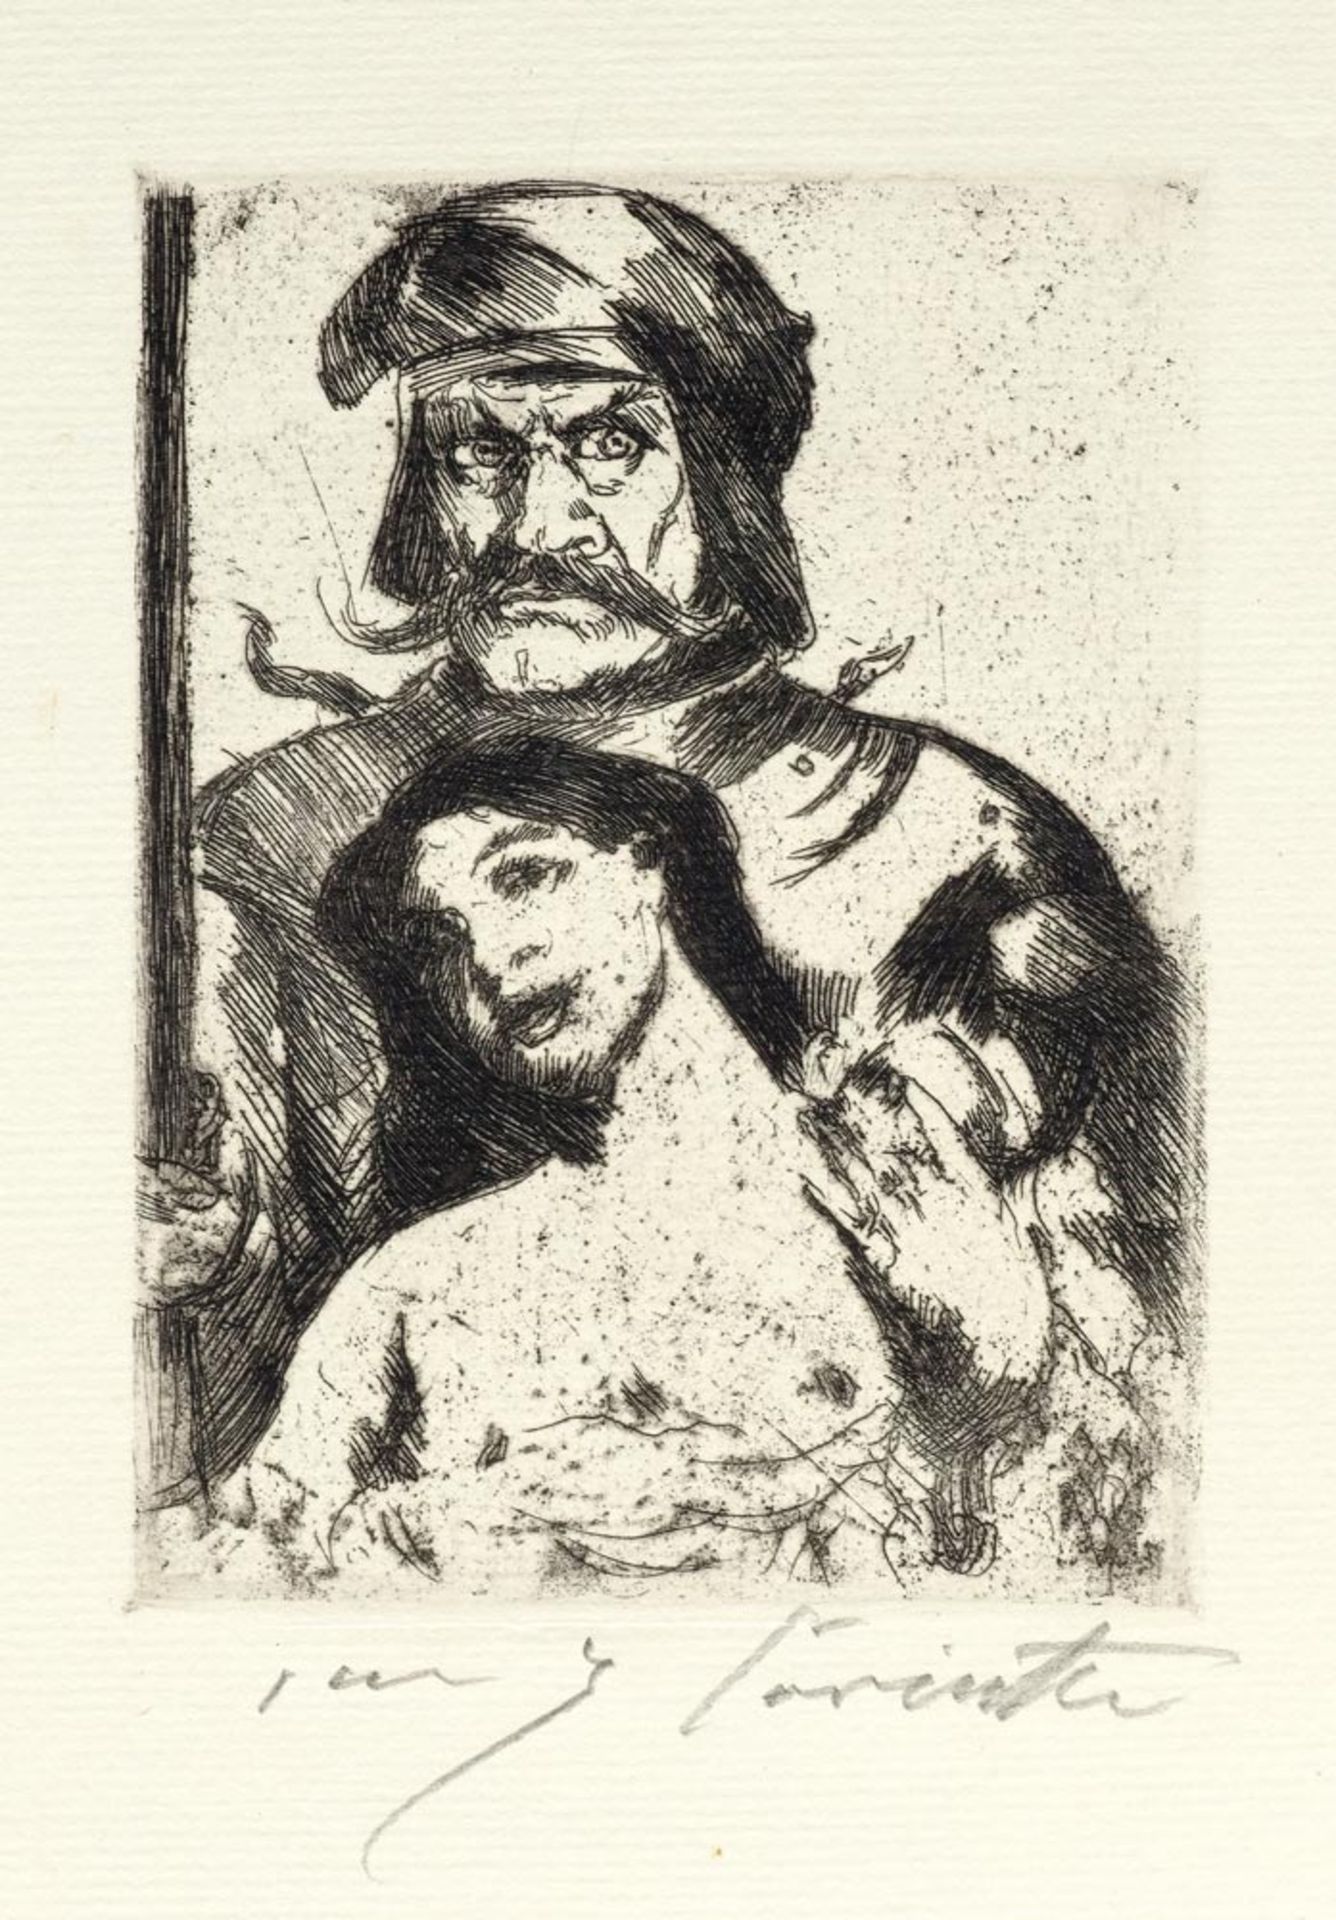 CORINTH, LOVIS  (Tapiau 1858-1925 Zandvoort)  Der Ritter, 1914.  Radierung, 14,3 x 10,5 cm (